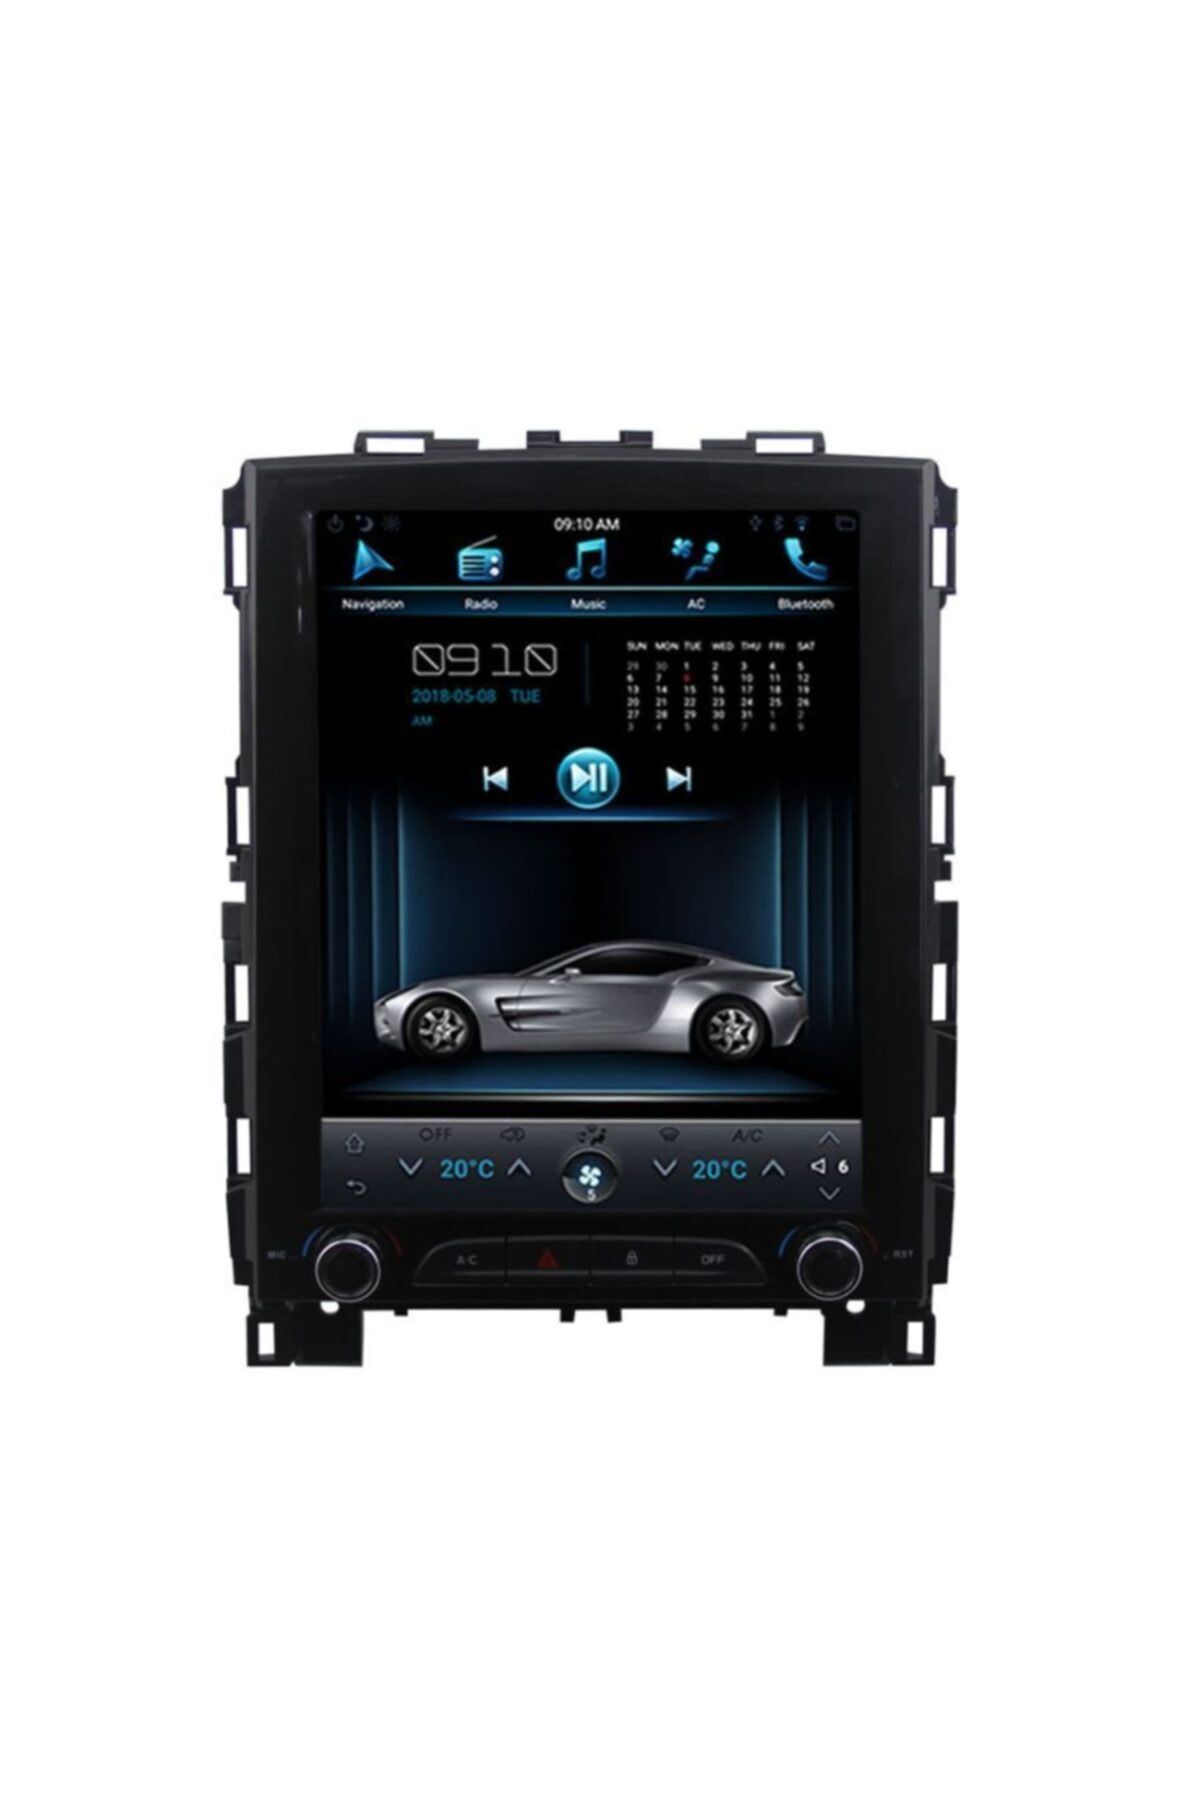 NEWSPACE Renault Megane 4 Tesla Android 2 32 Gb Multimedya Dsp Ips Ekran Full Navigasyon Oto Teyp